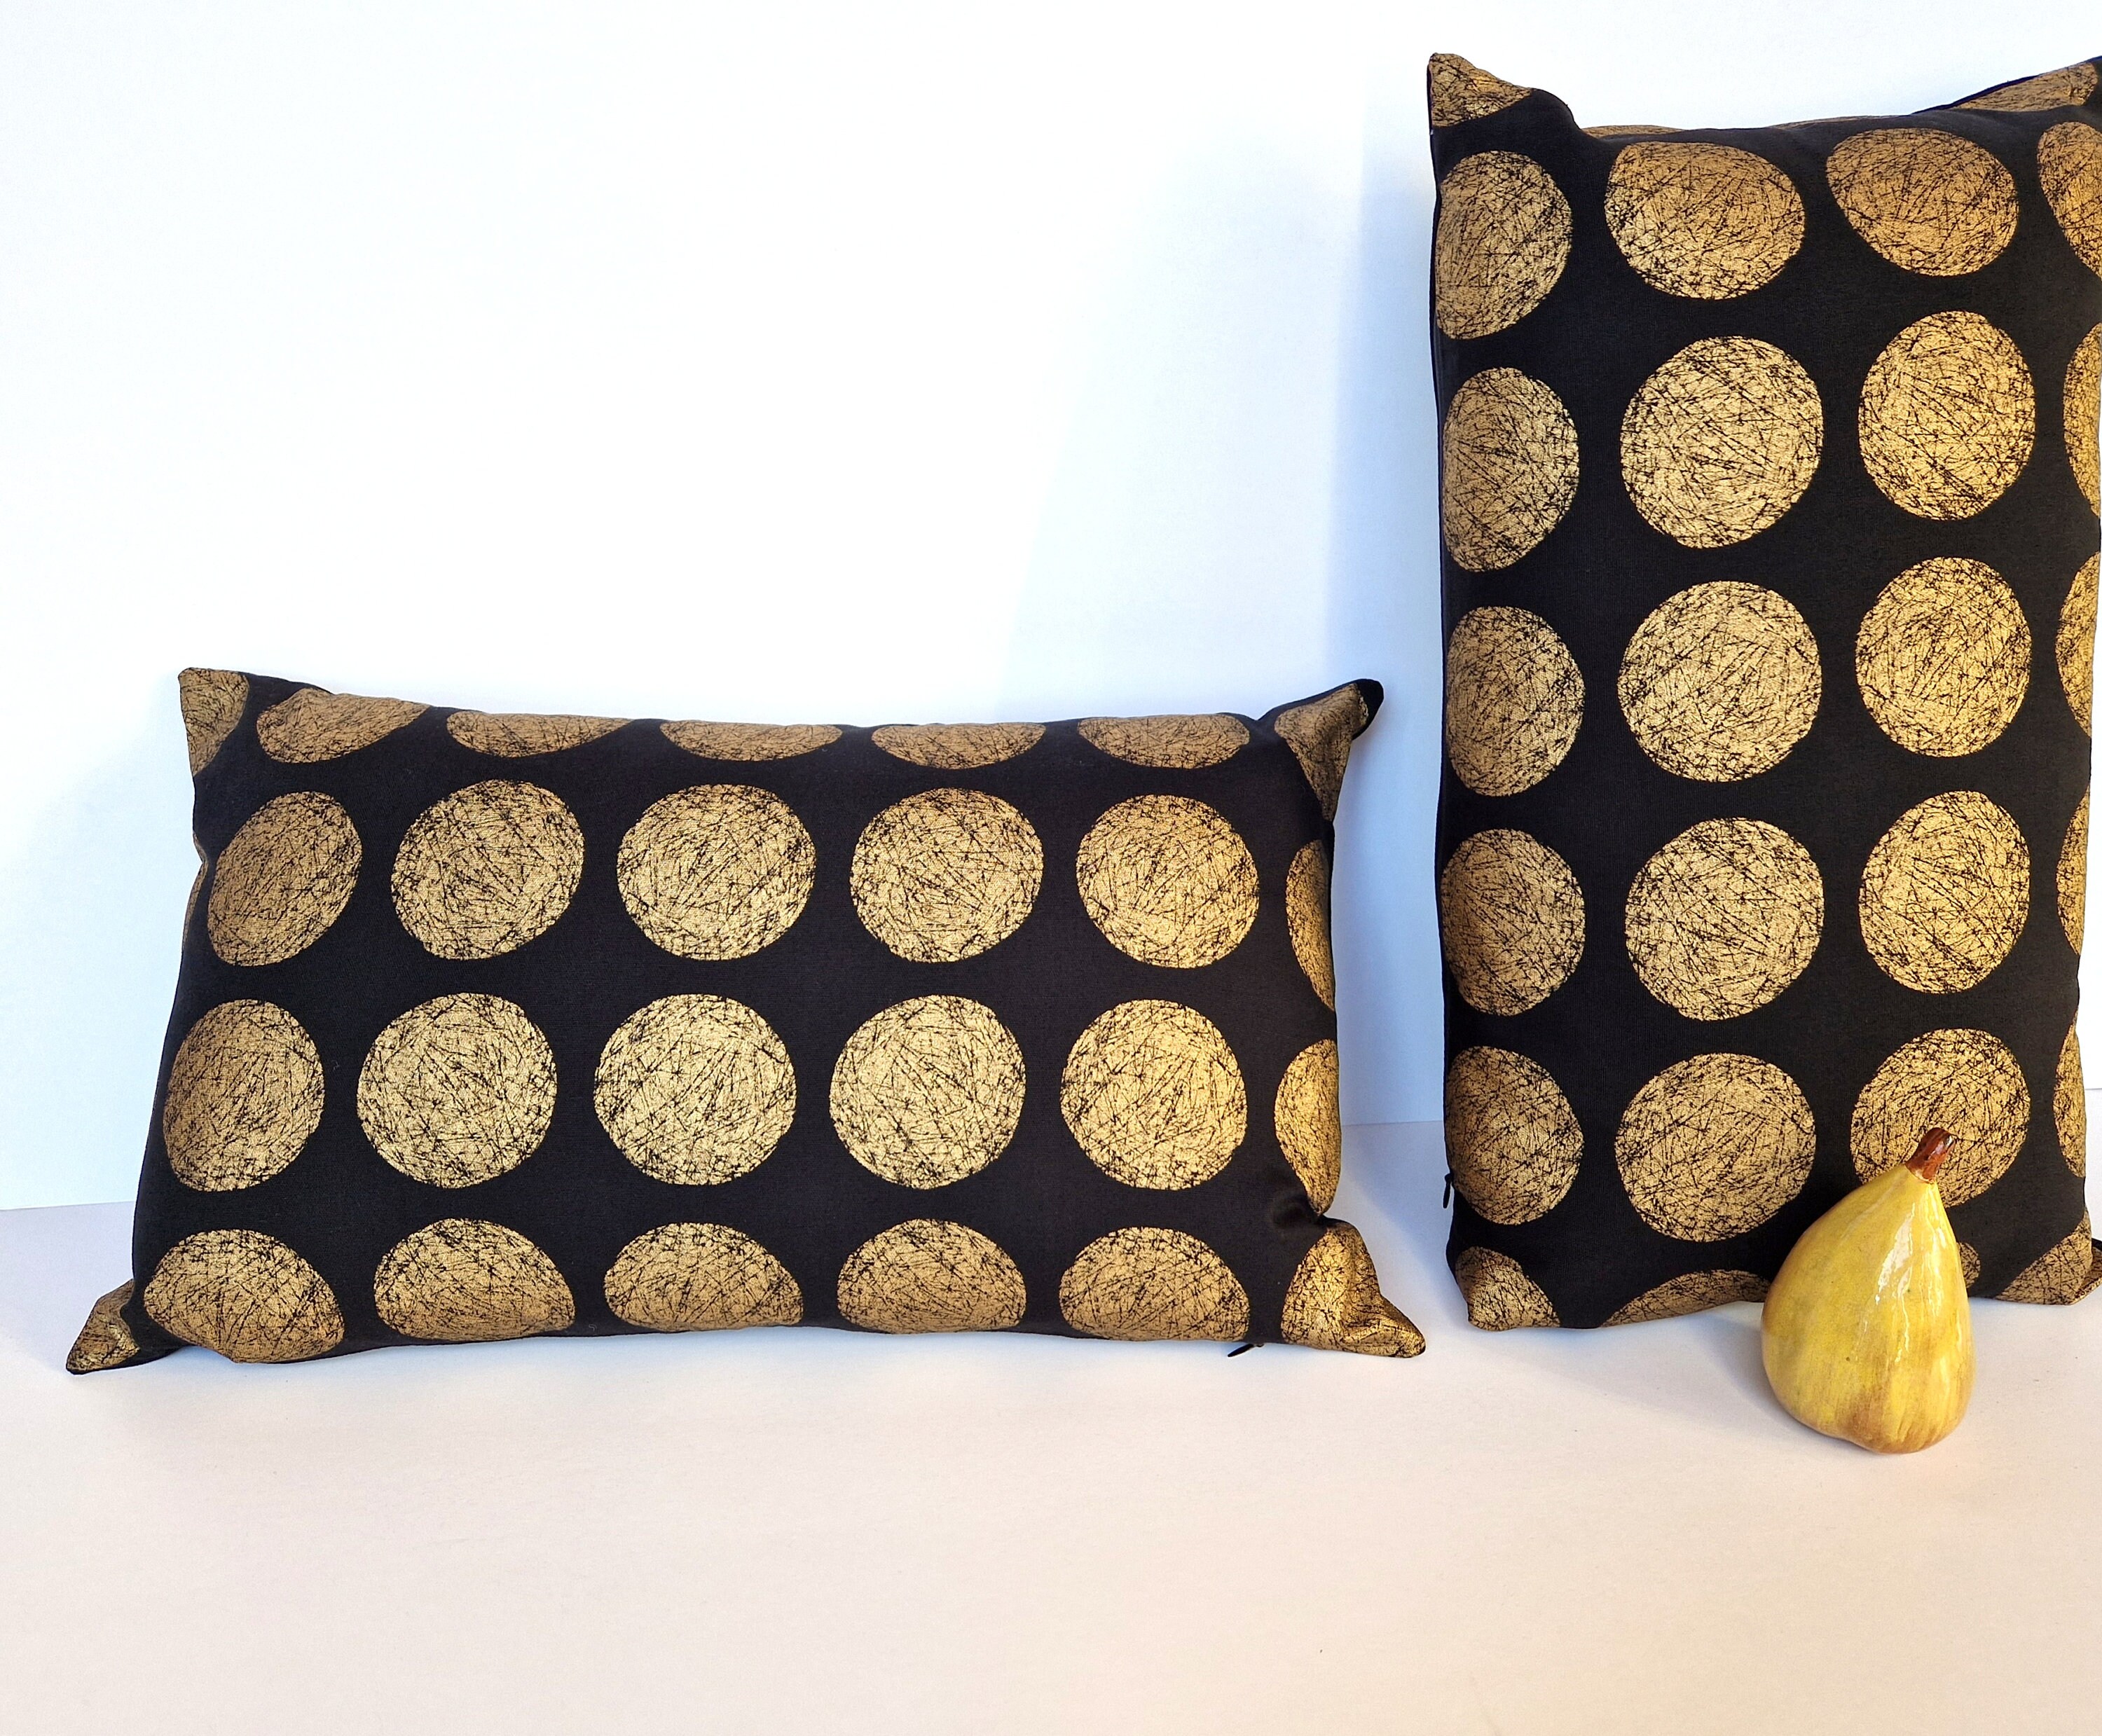 Housse de coussin, cale-dos jaune avec galon doré - 50 x 30 cm - création  artisanale - Un grand marché